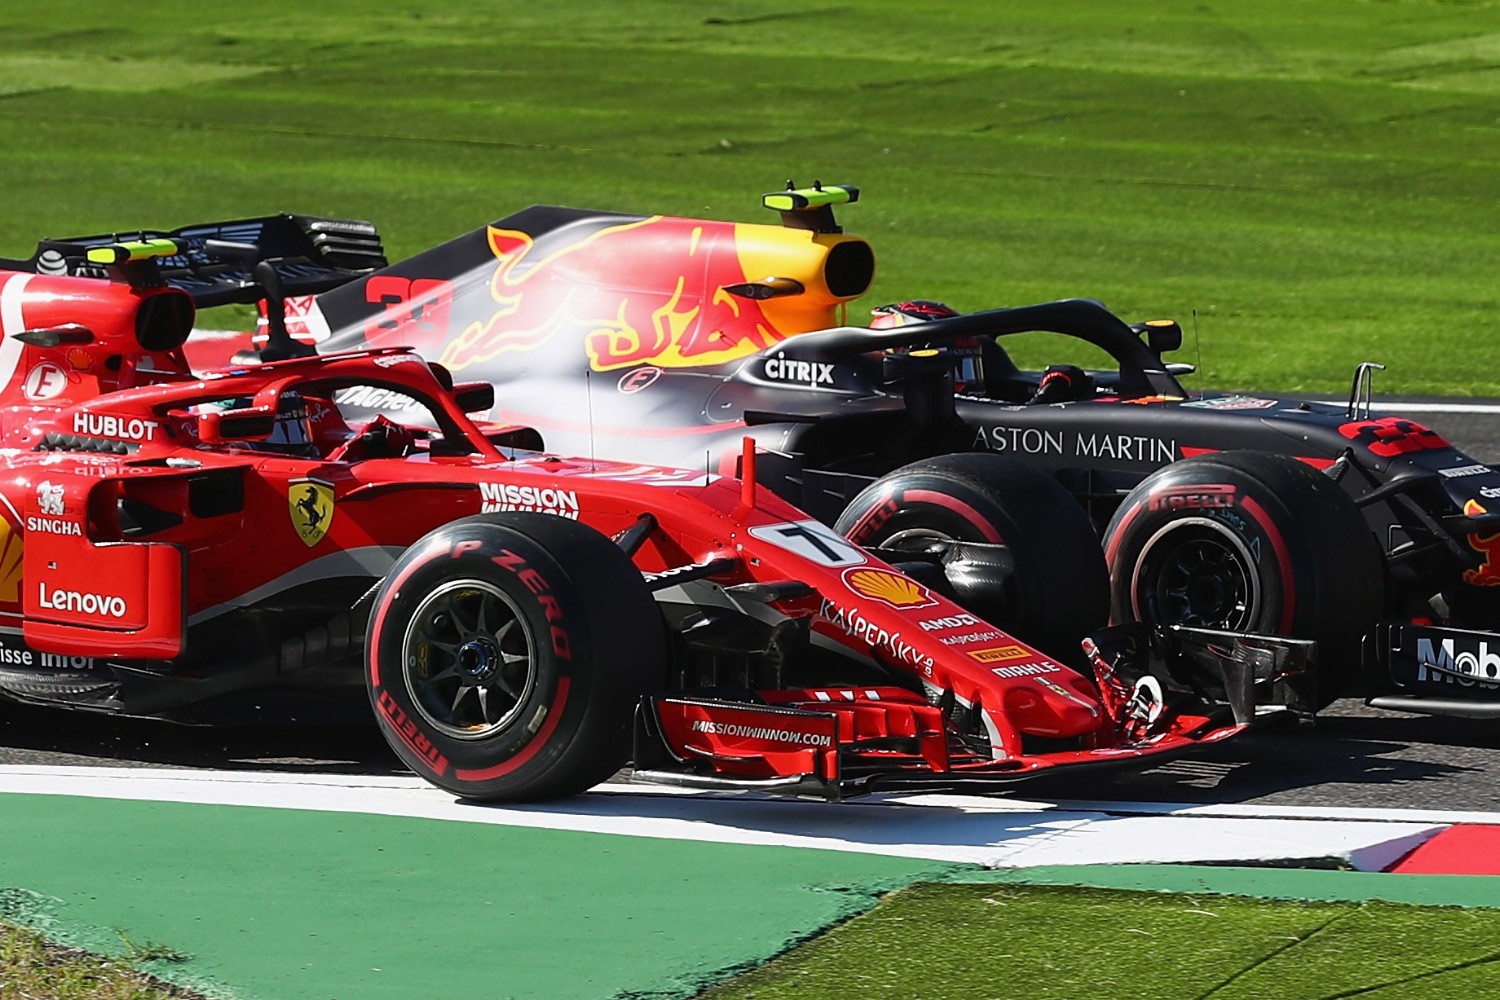 Verstappen pushes Raikkonen off the track. Ferrari nemisis Verstappen then clashed with Vettel on lap 4